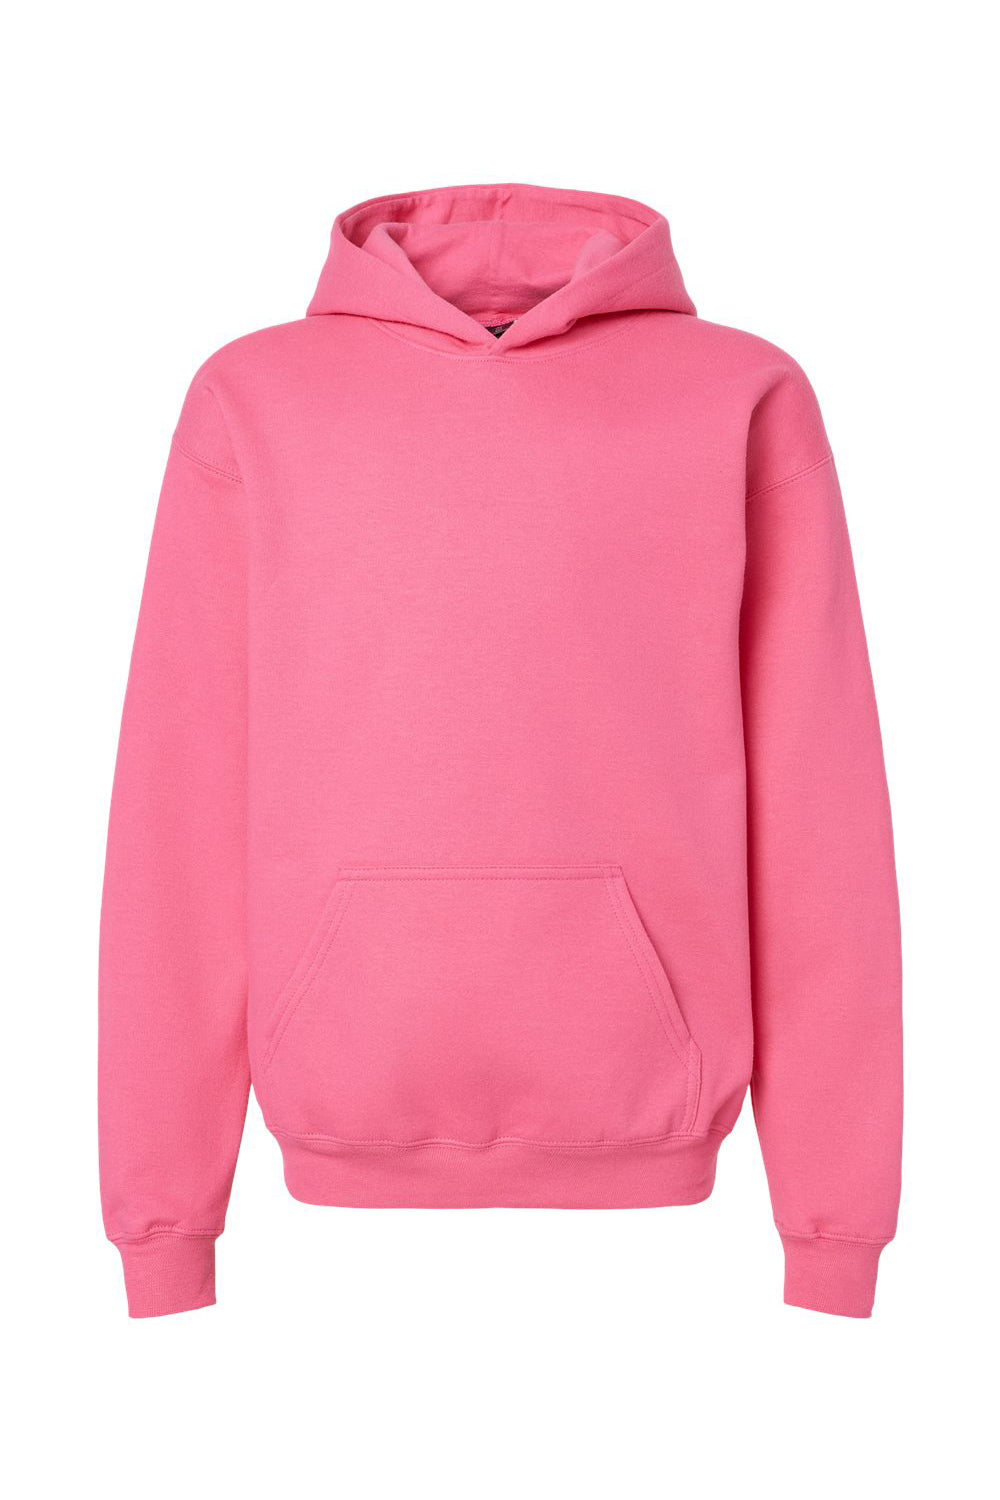 Gildan SF500B Youth Softstyle Hooded Sweatshirt Hoodie Pink Lemonade Flat Front